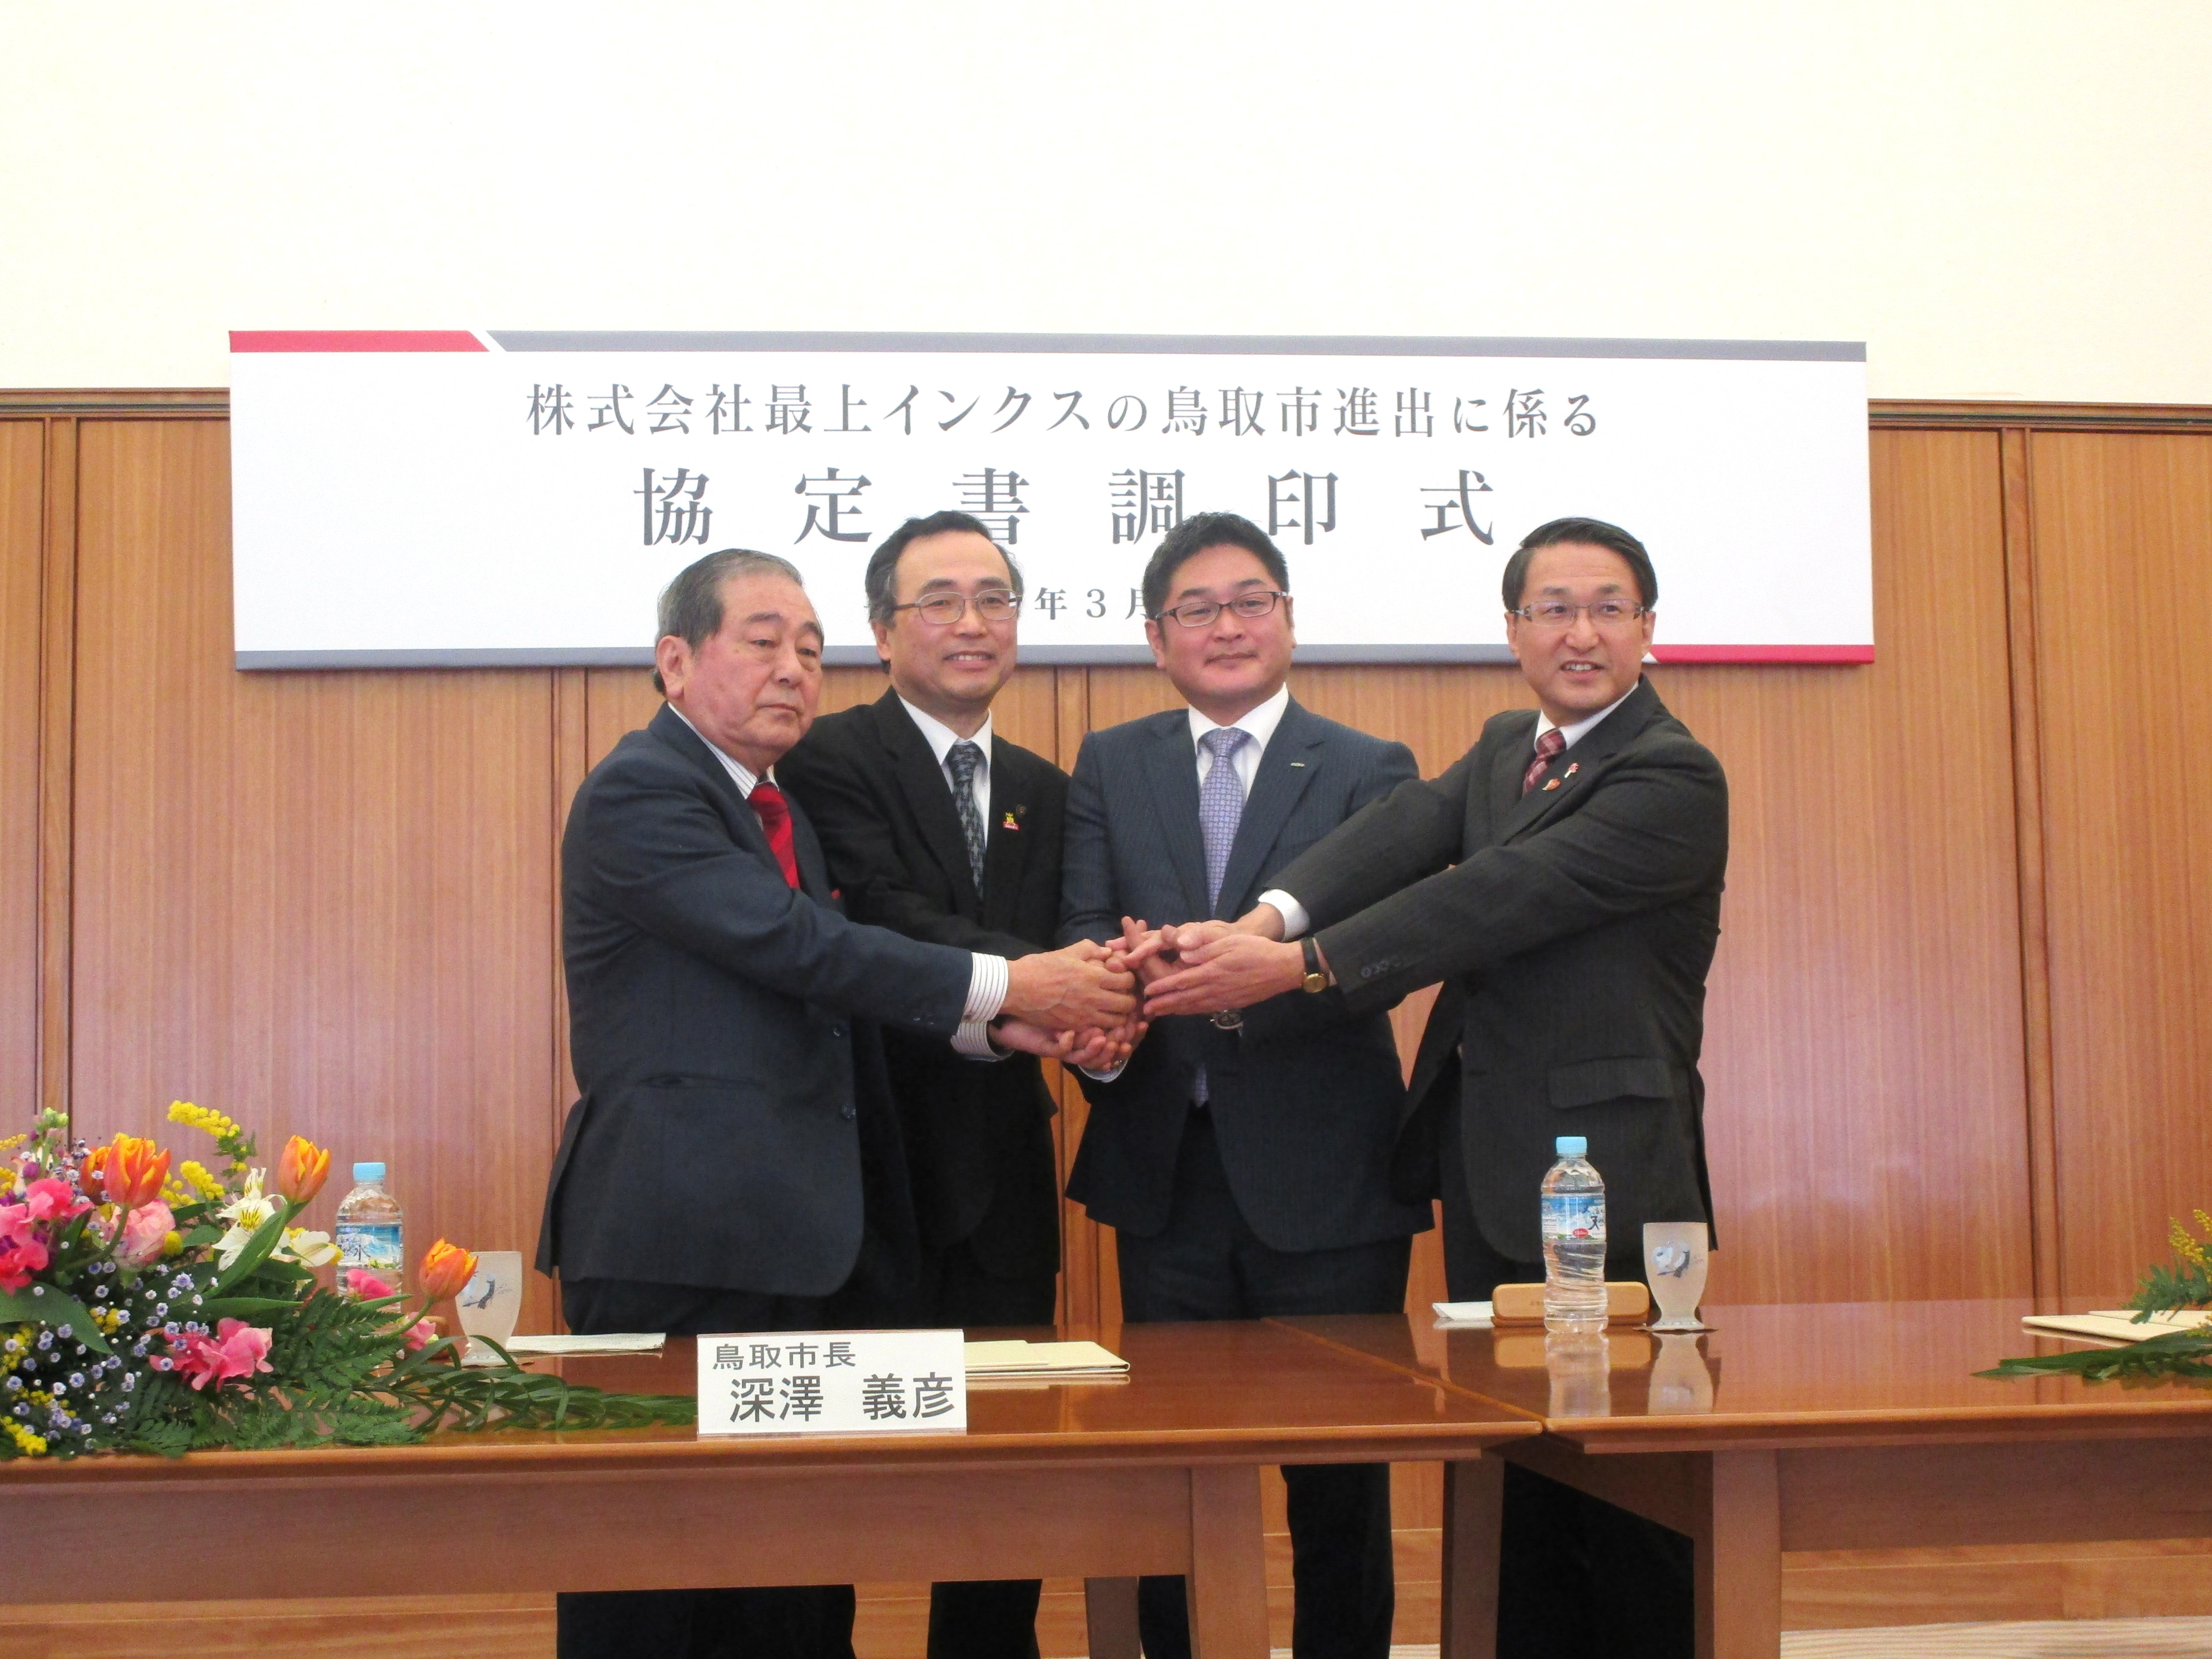 3者による調印後、鳥取商工会議所藤縄会頭を加えた4者による固い握手の様子。